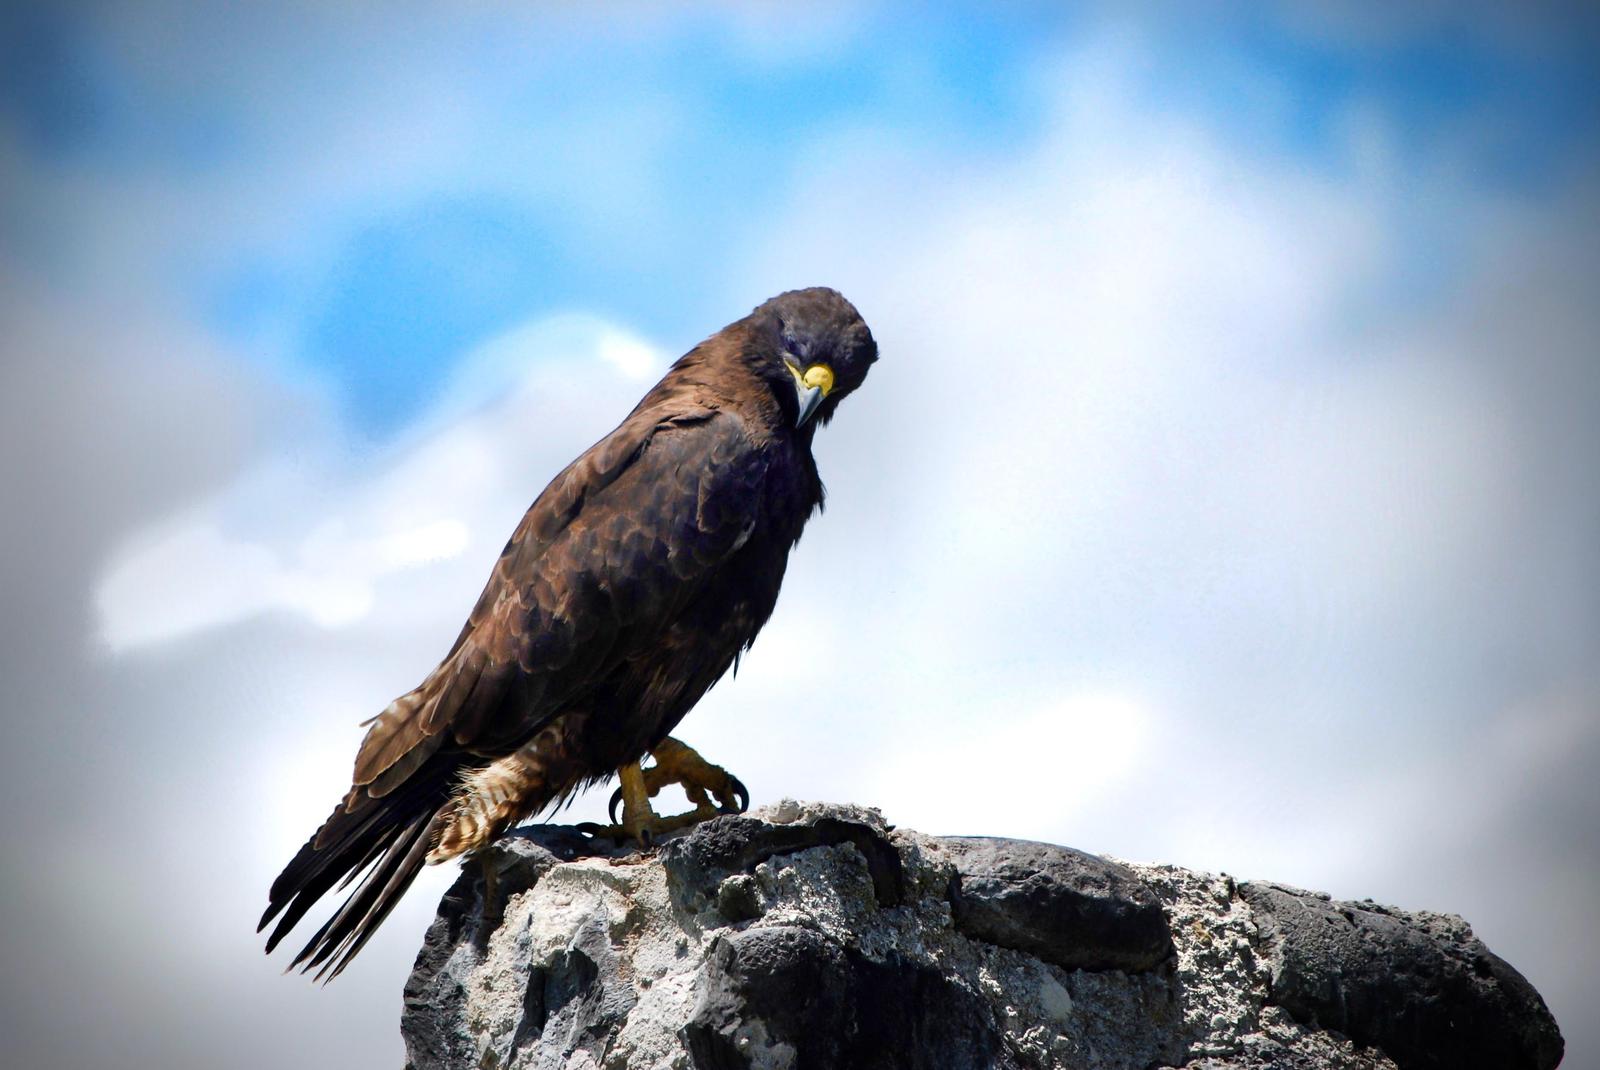 Galapagos Hawk Photo by Olivia Noonan